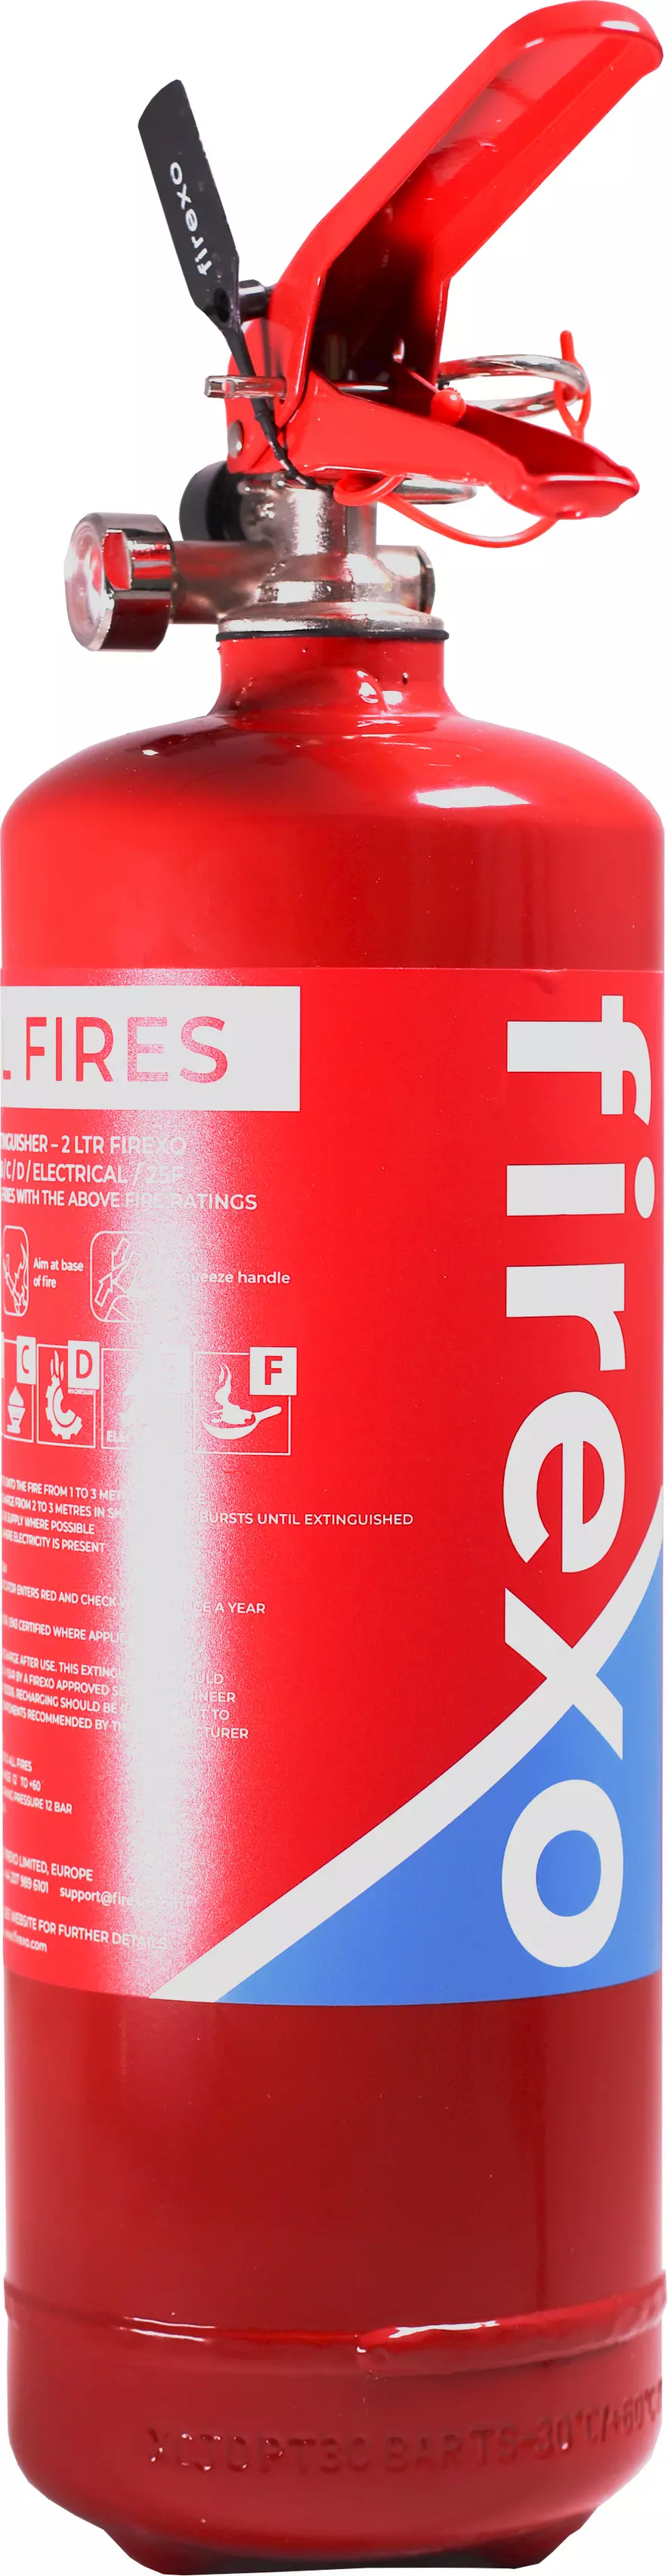 Firexo 2ltr Fire Extinguisher Halfords Uk